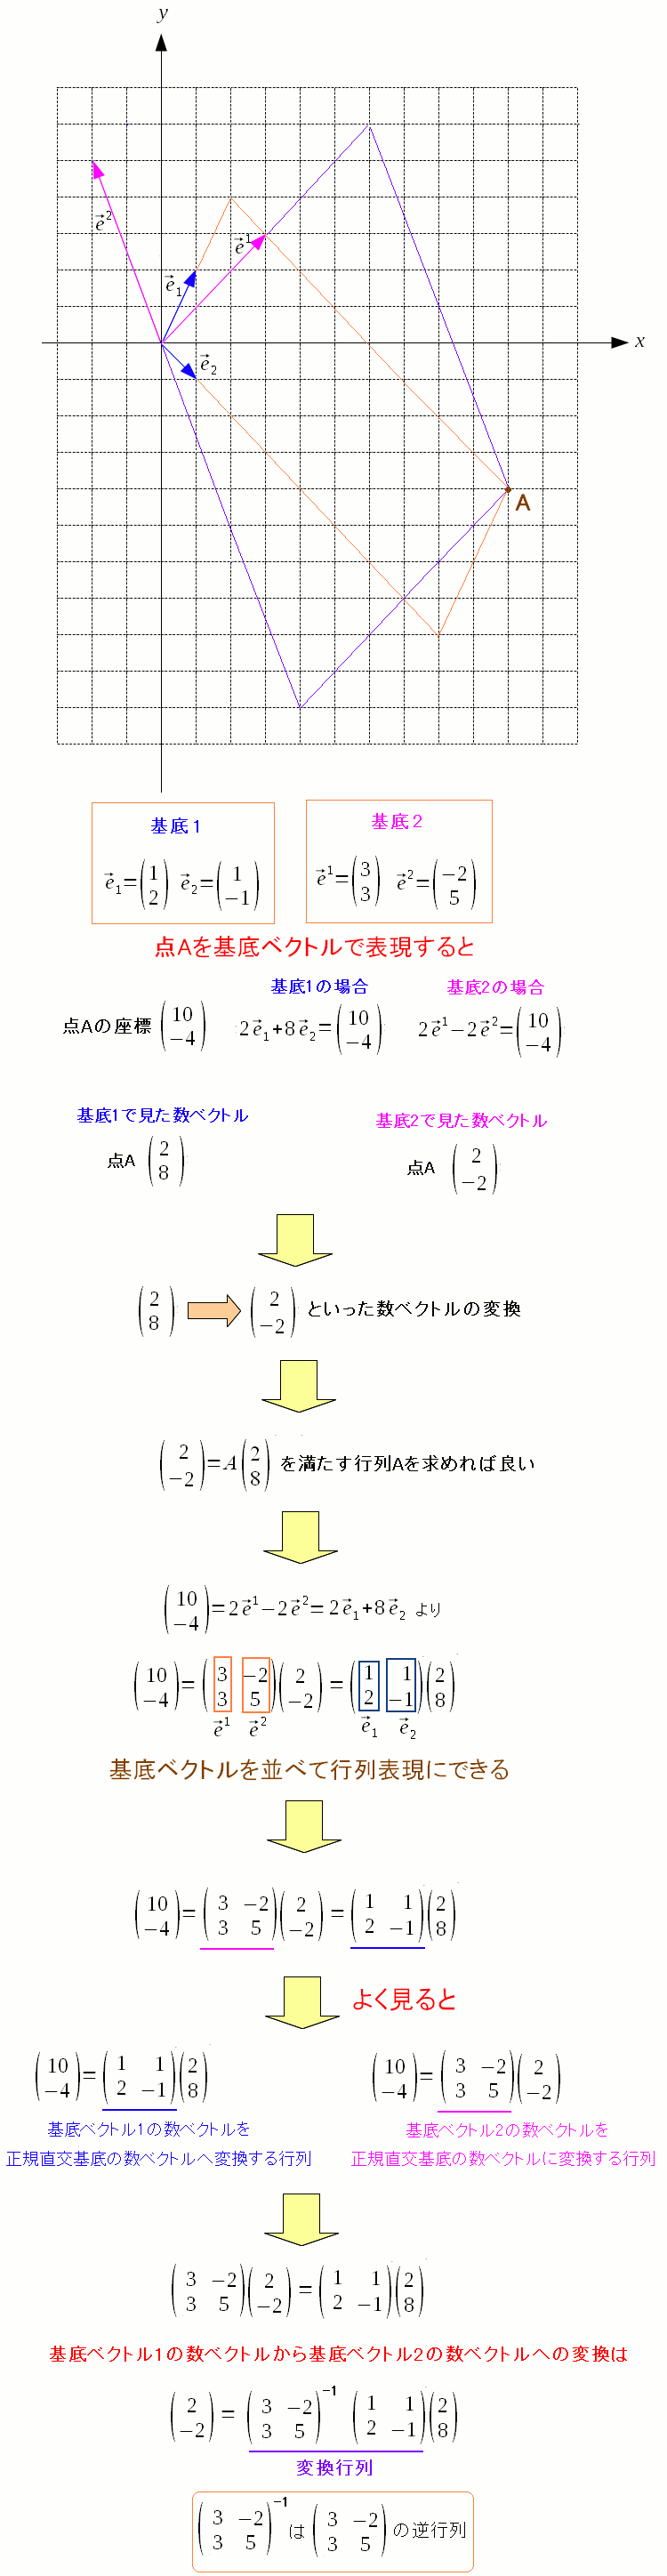 数ベクトルの変換の際、変換行列が使われる